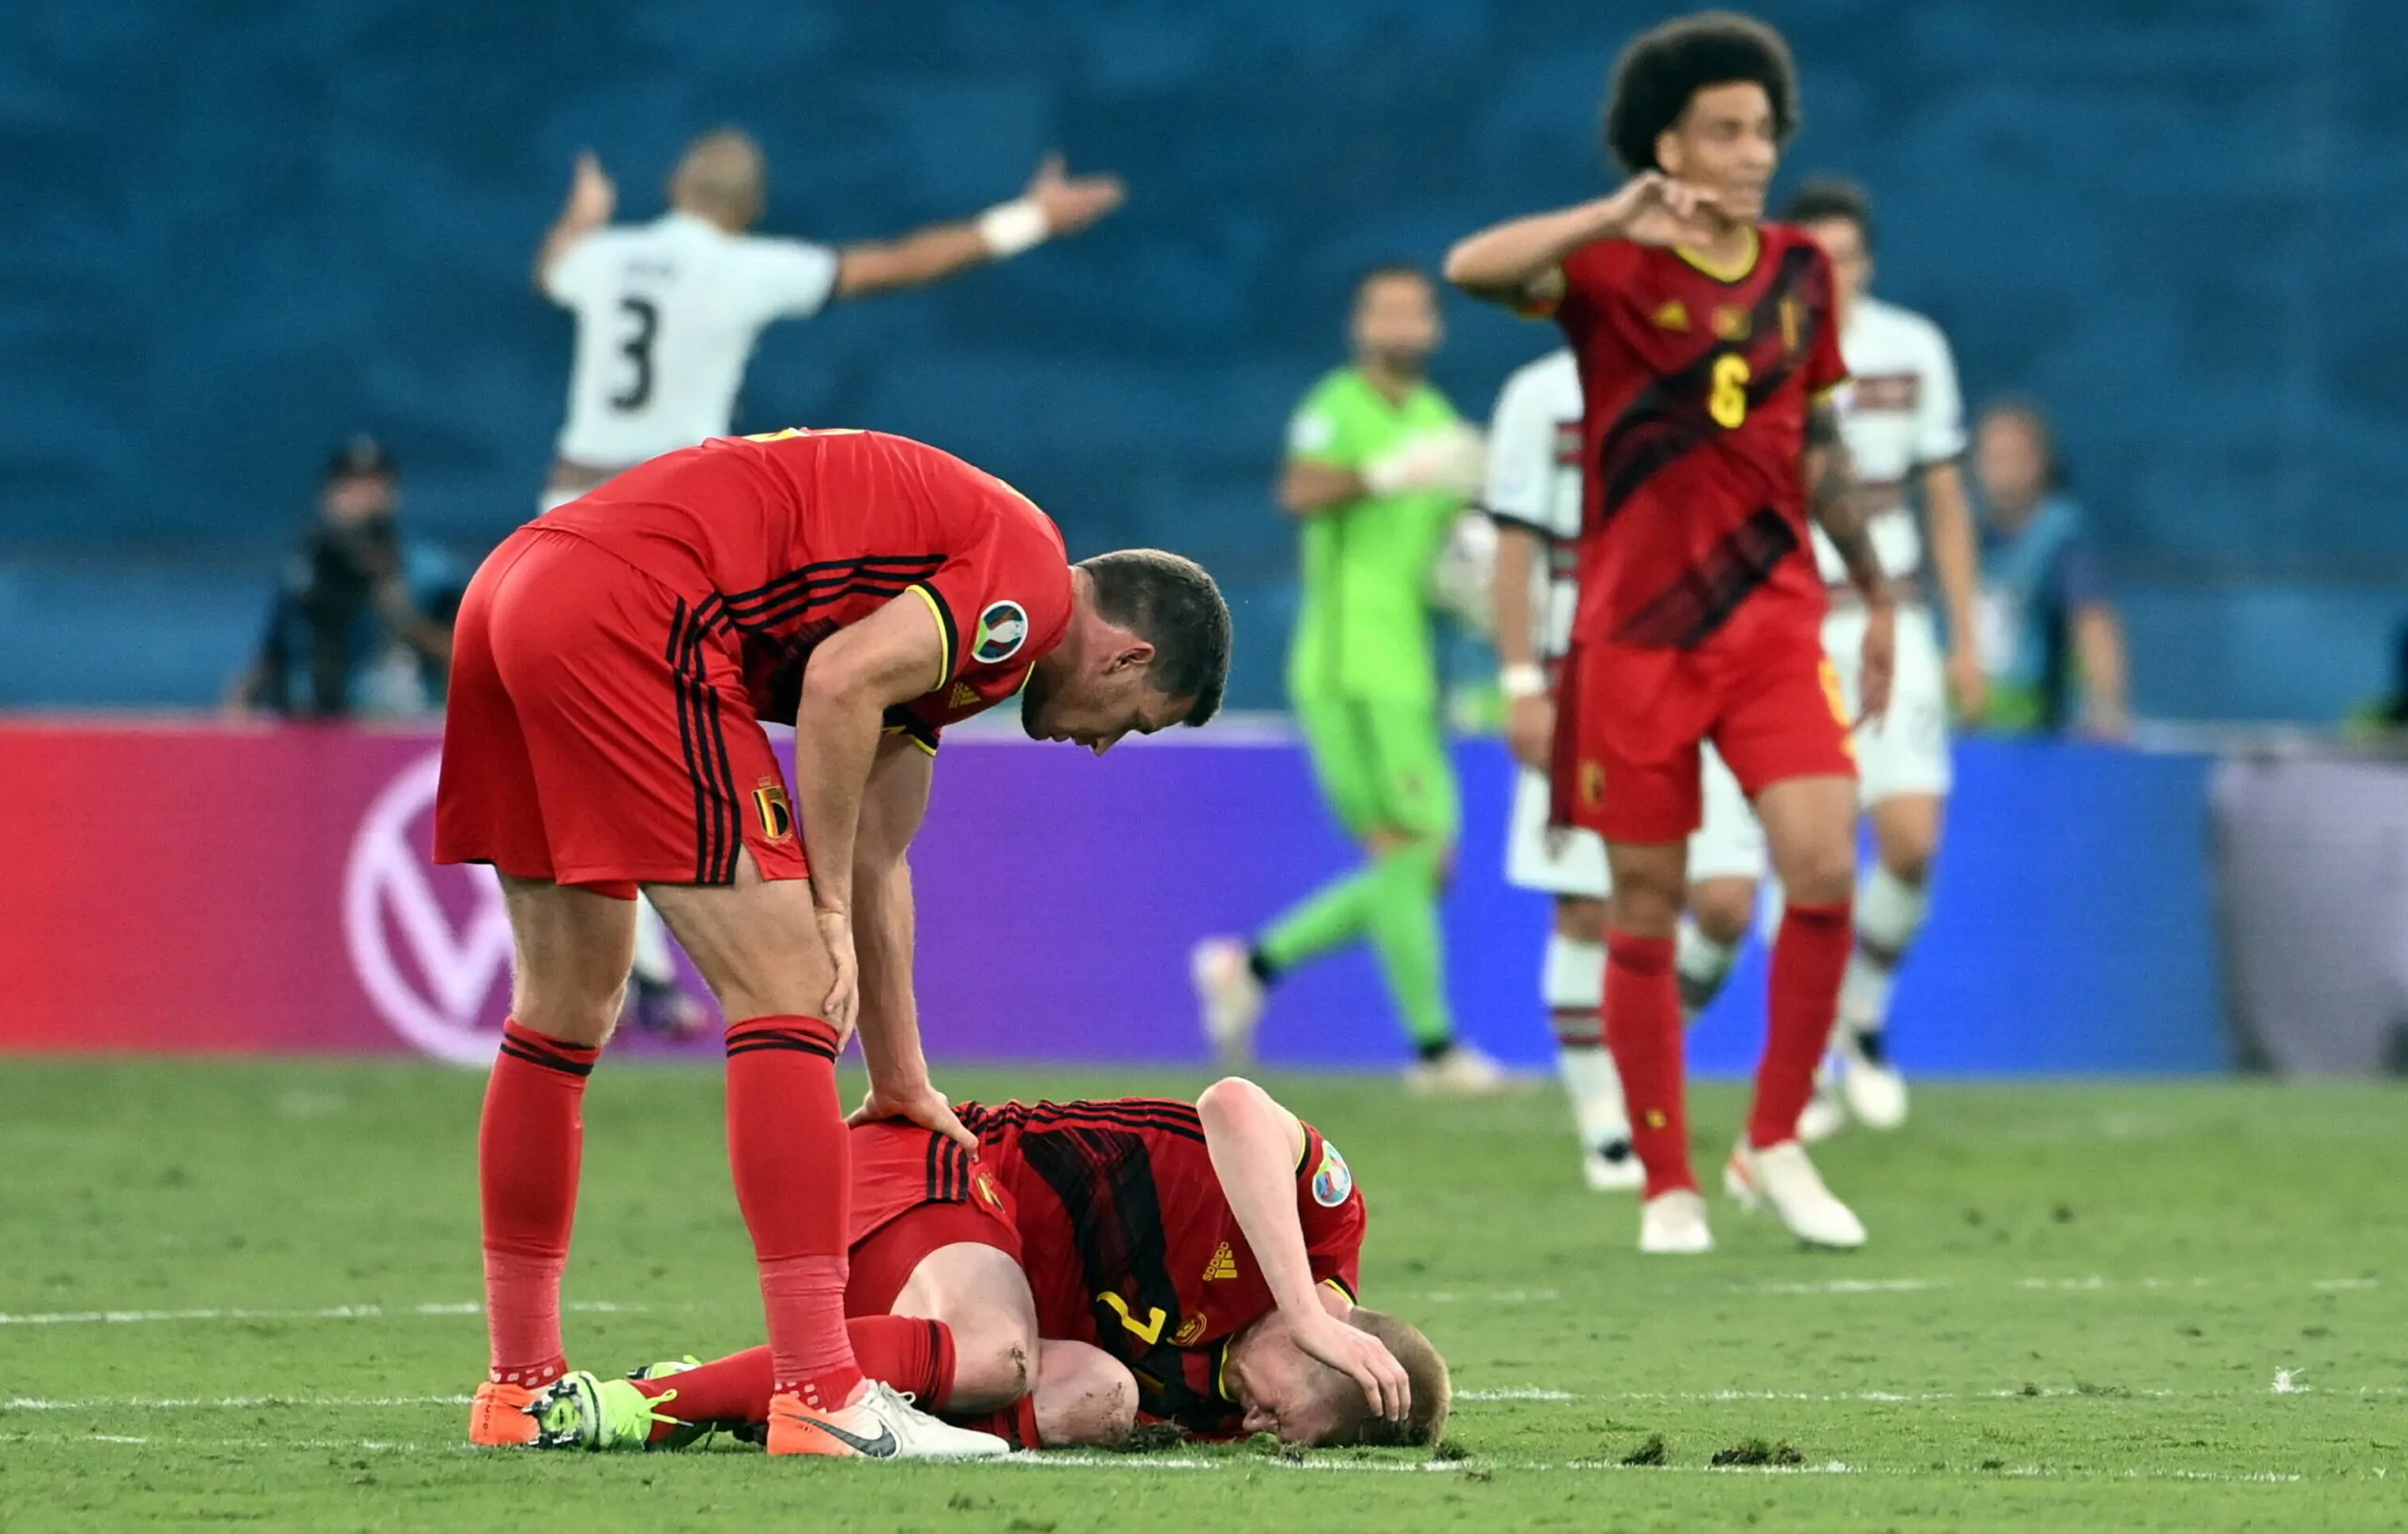 De Bruyne e Hazard in dubbio per Belgio-Italia, il ct Martinez: “Infortuni non gravi, sensazioni positive per entrambi”